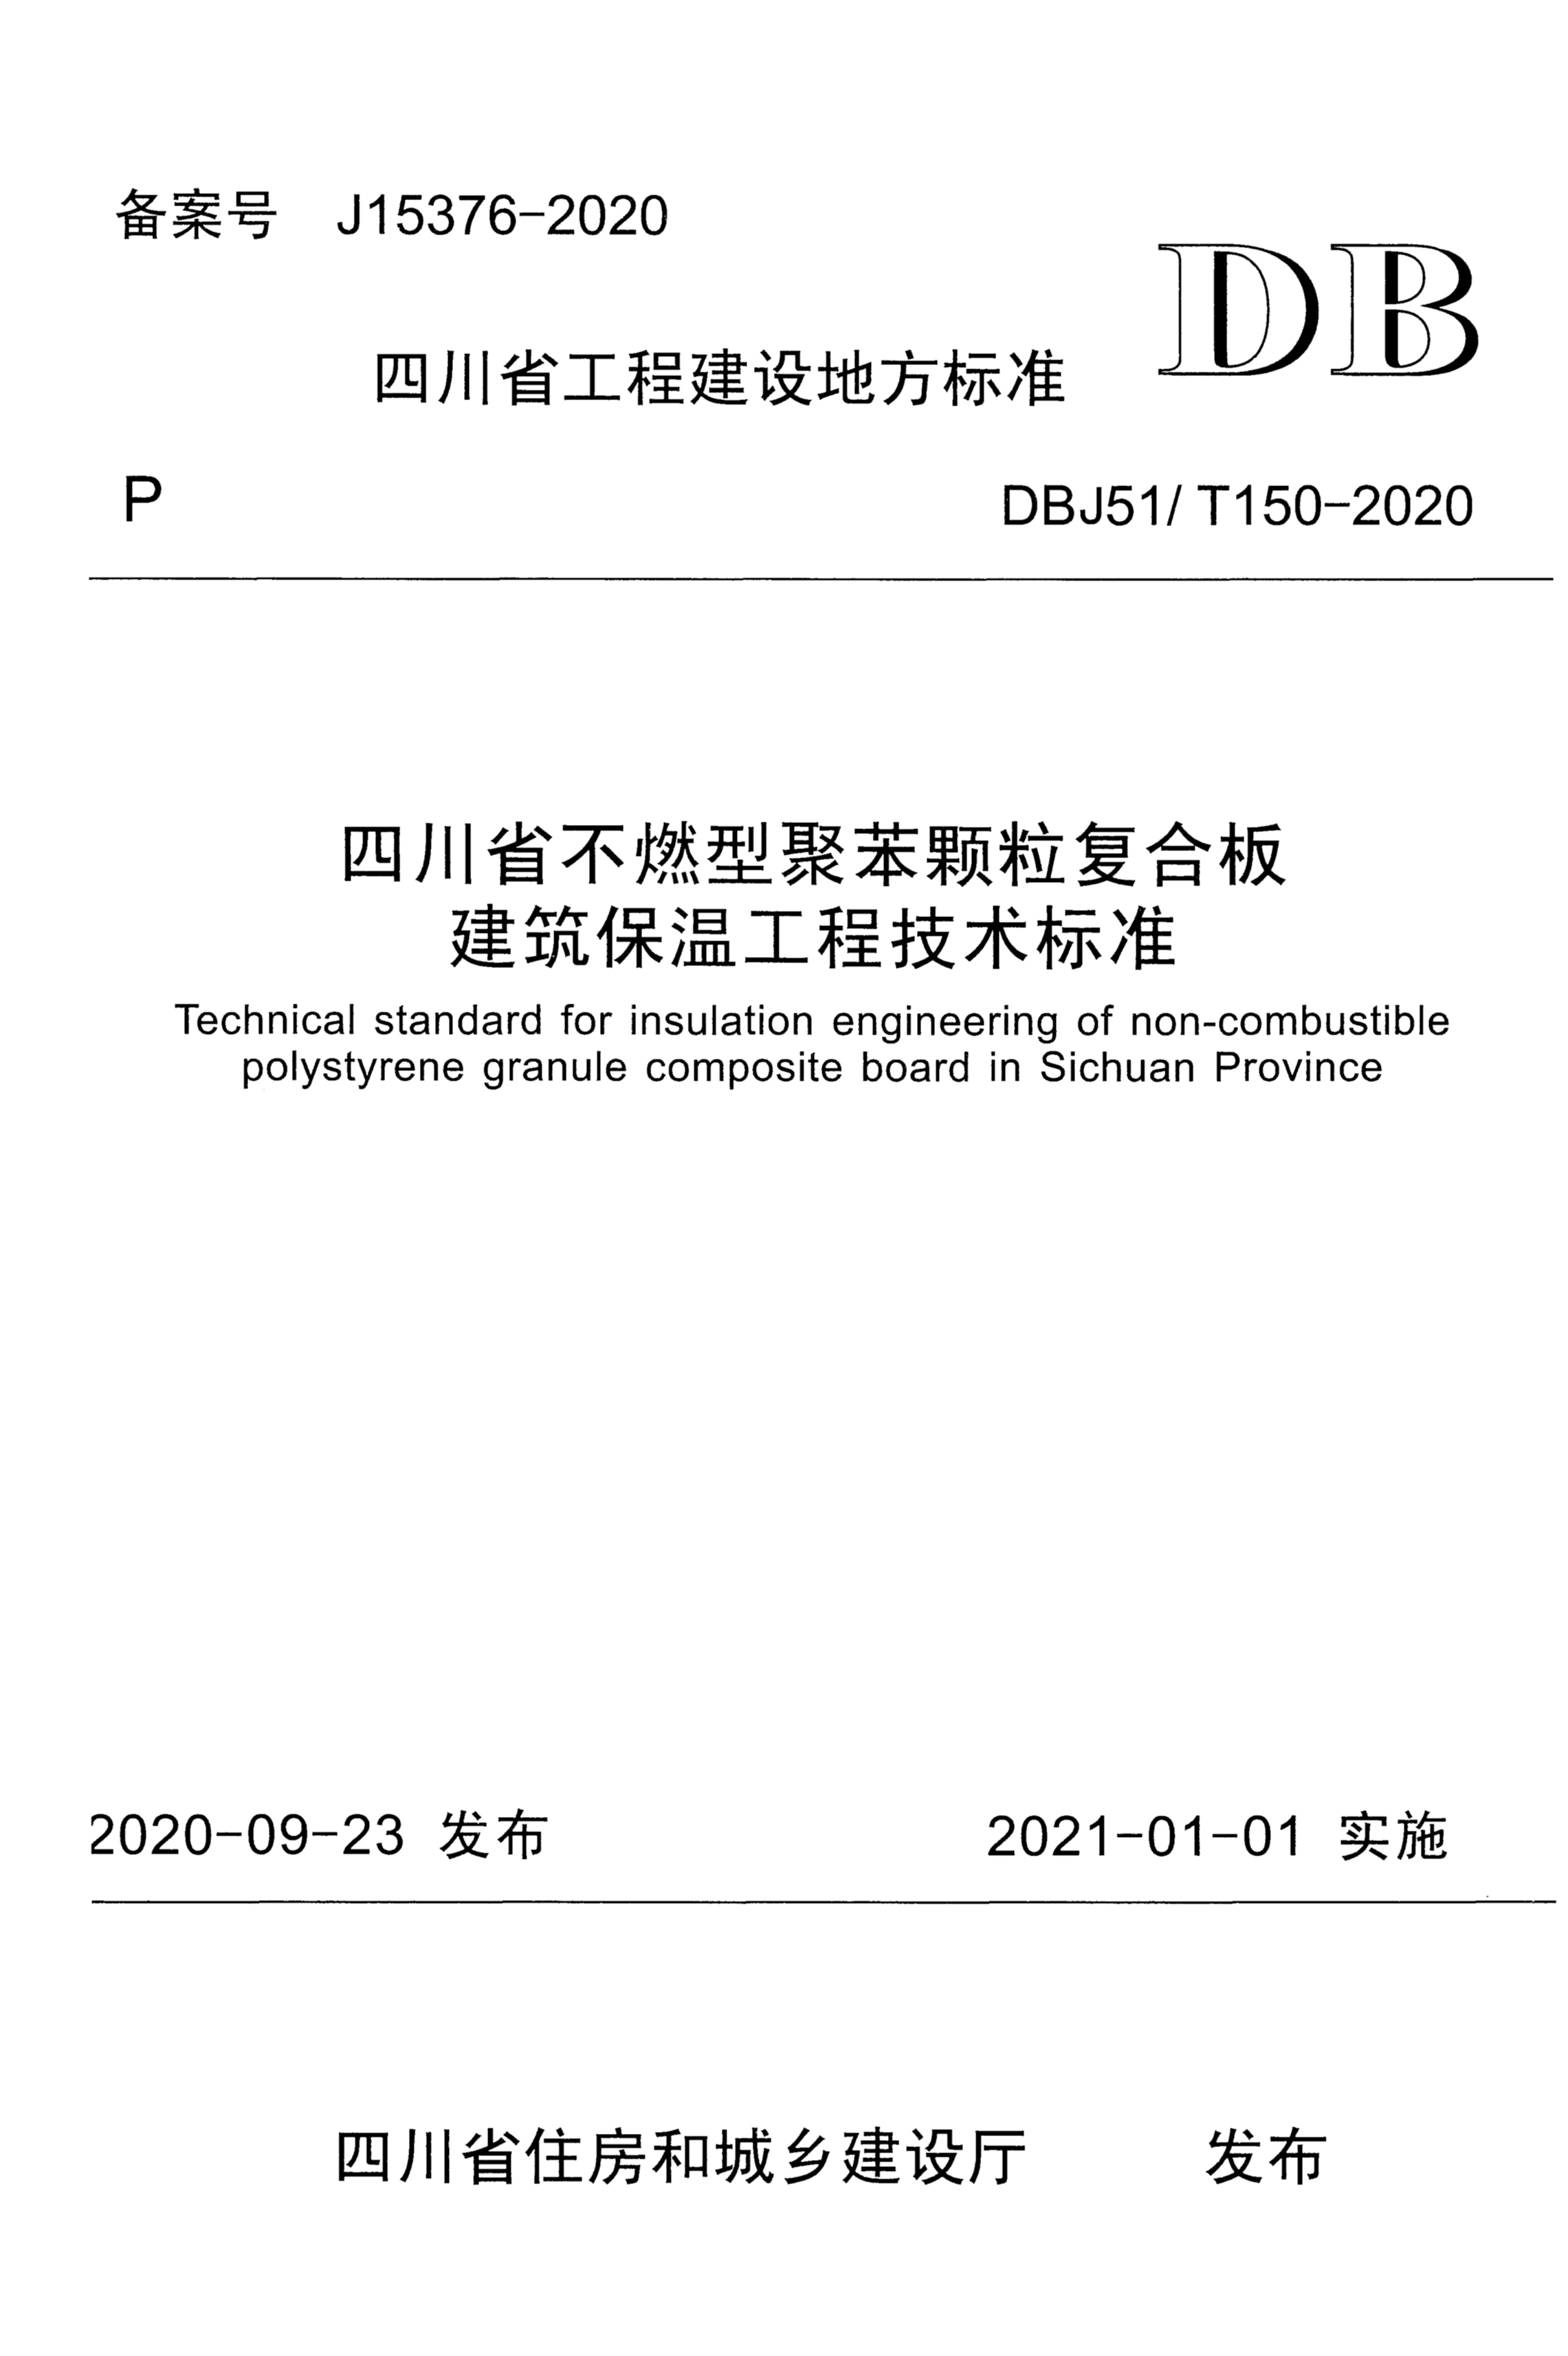 DBJ51/T 150-2020 四川省不燃型聚苯颗粒复合板建筑保温工程技术标准